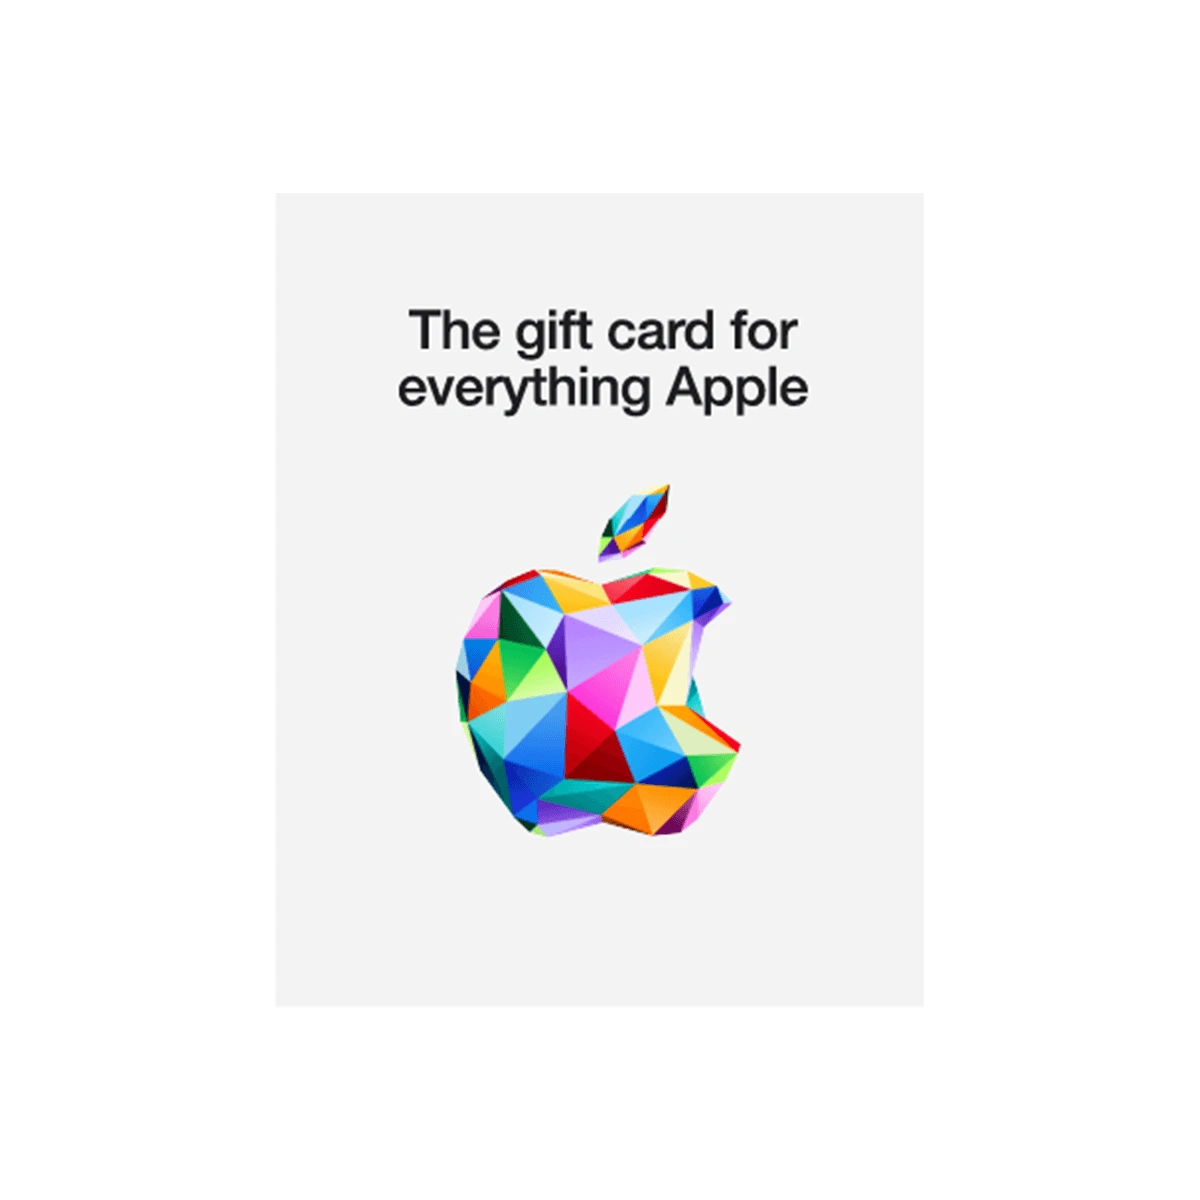 Carte Apple Store - ITunes 100 Euro - VOTRE SPÉCIALISTE JOUETS AU MAROC